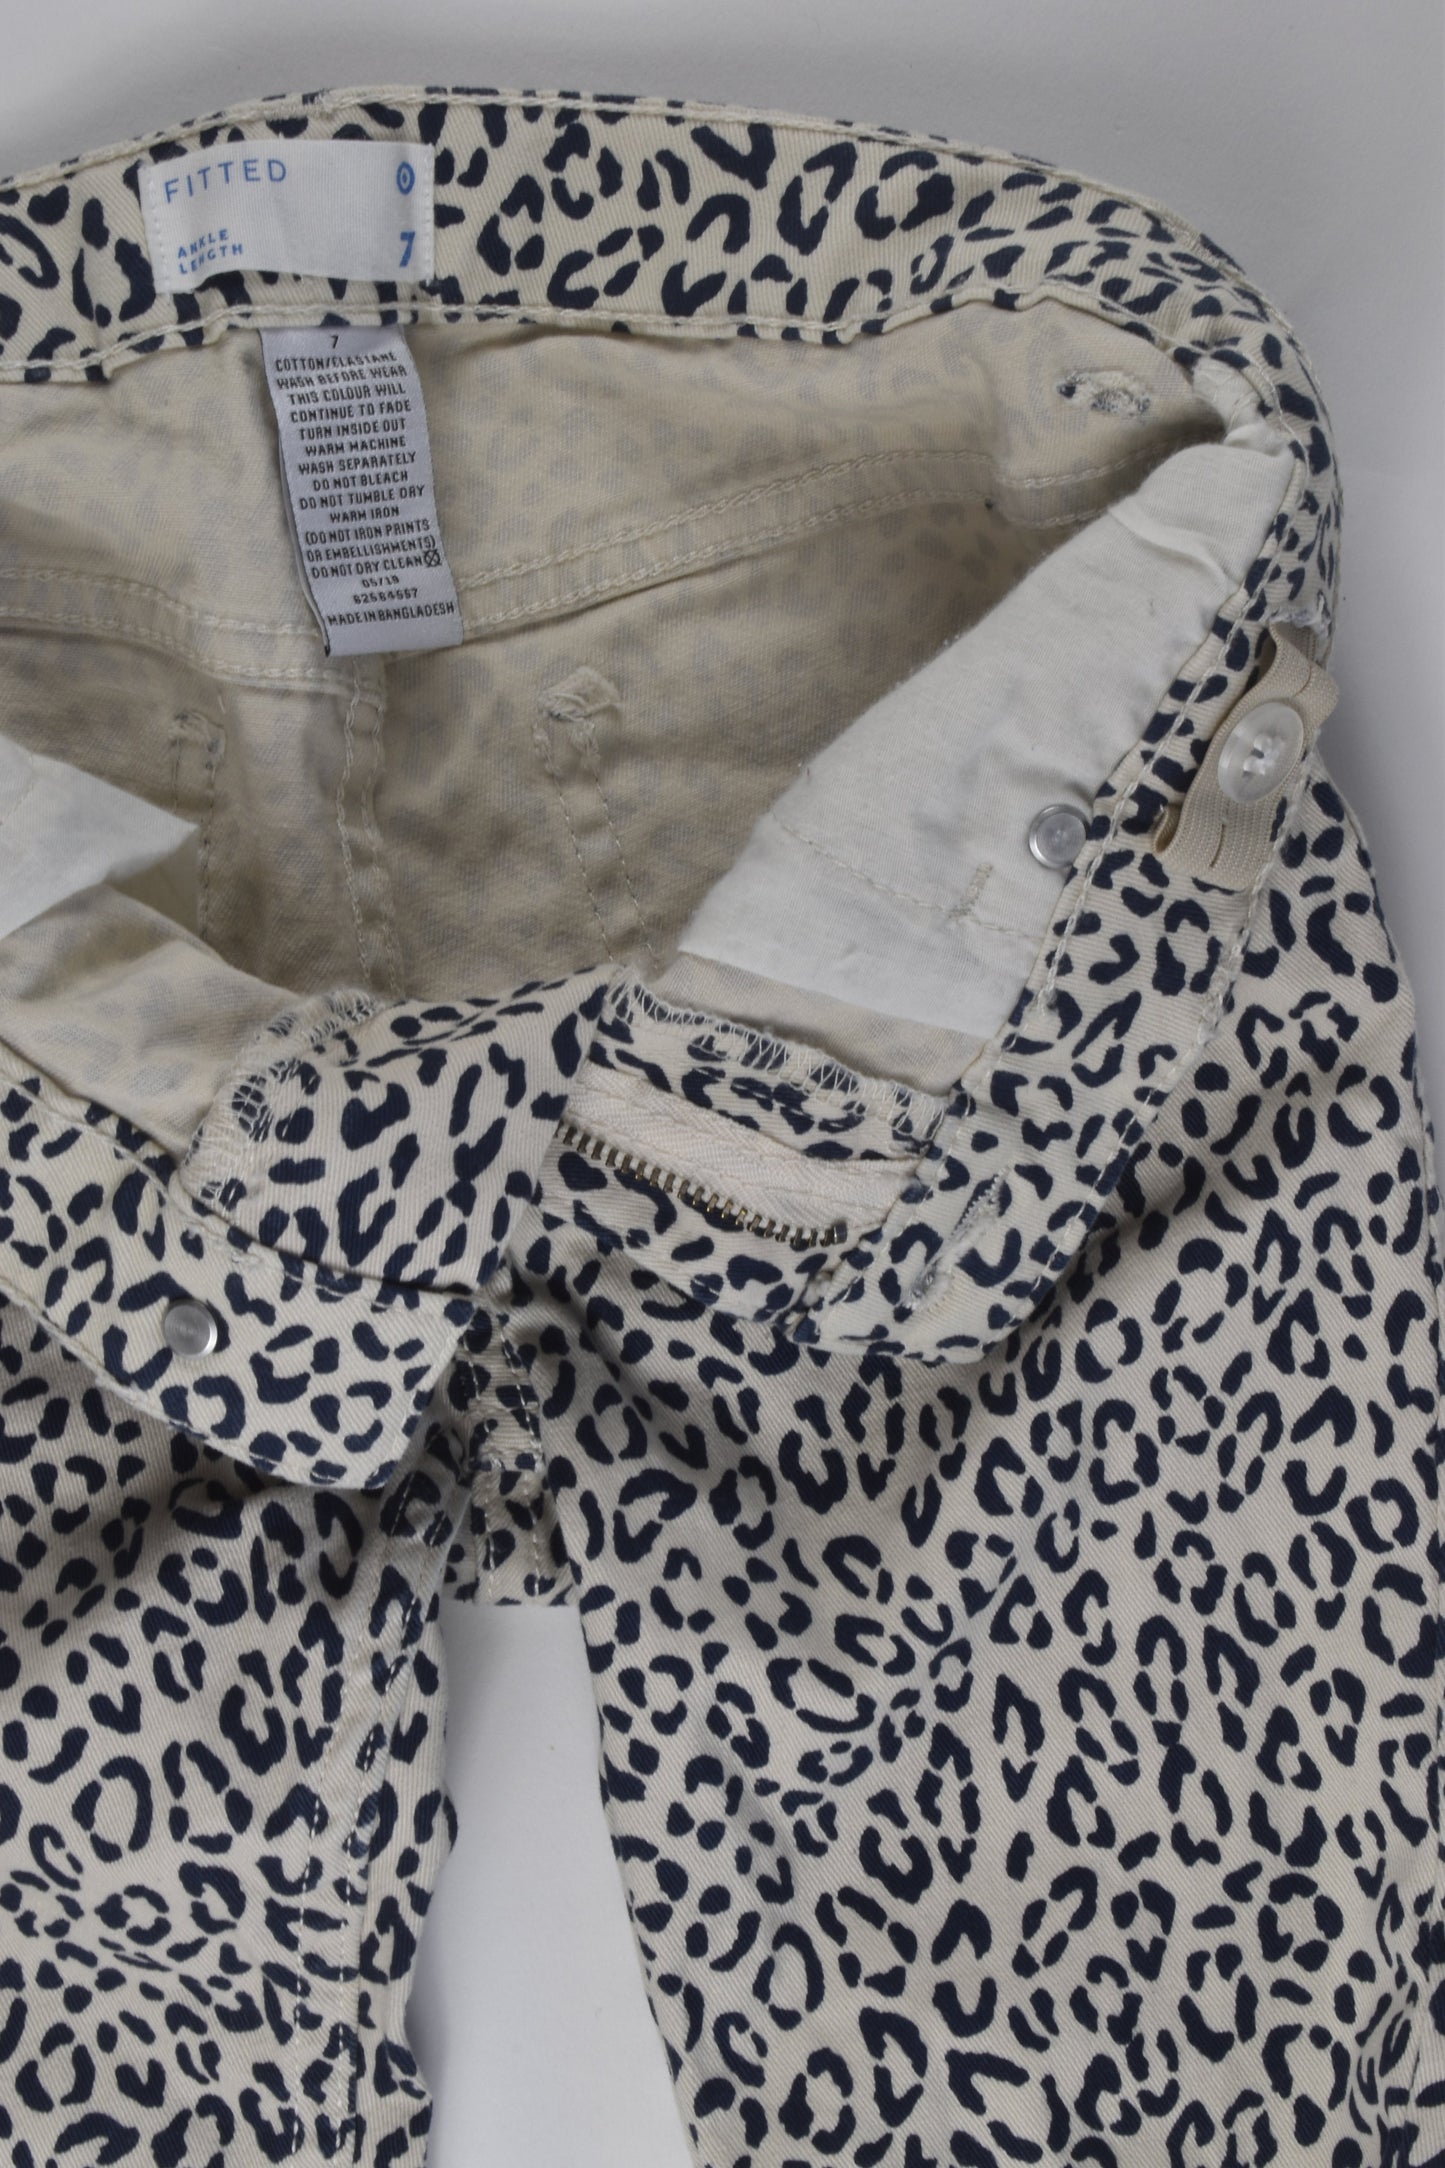 Target Size 7 Leopard Print Pants